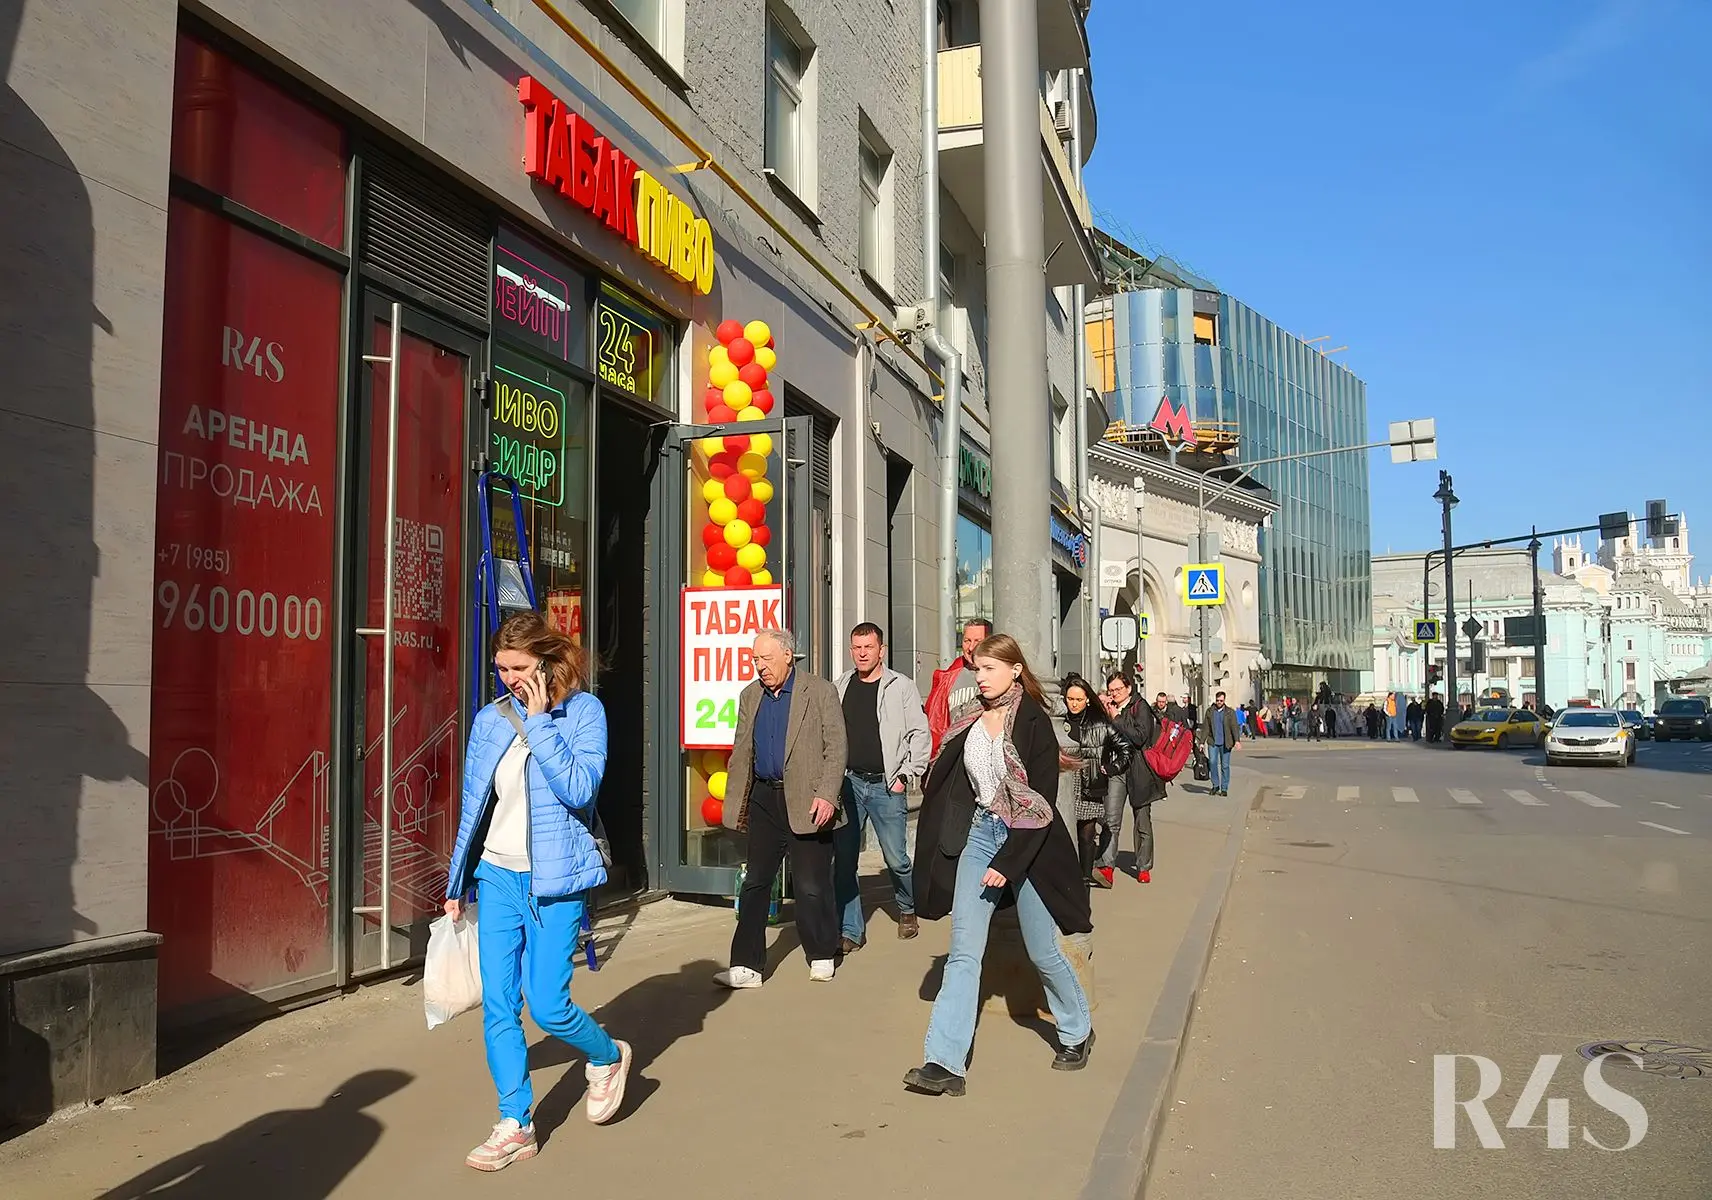 Продажа торгового помещения площадью 19.8 м2 в Москве: Грузинский Вал, 28/45 R4S | Realty4Sale